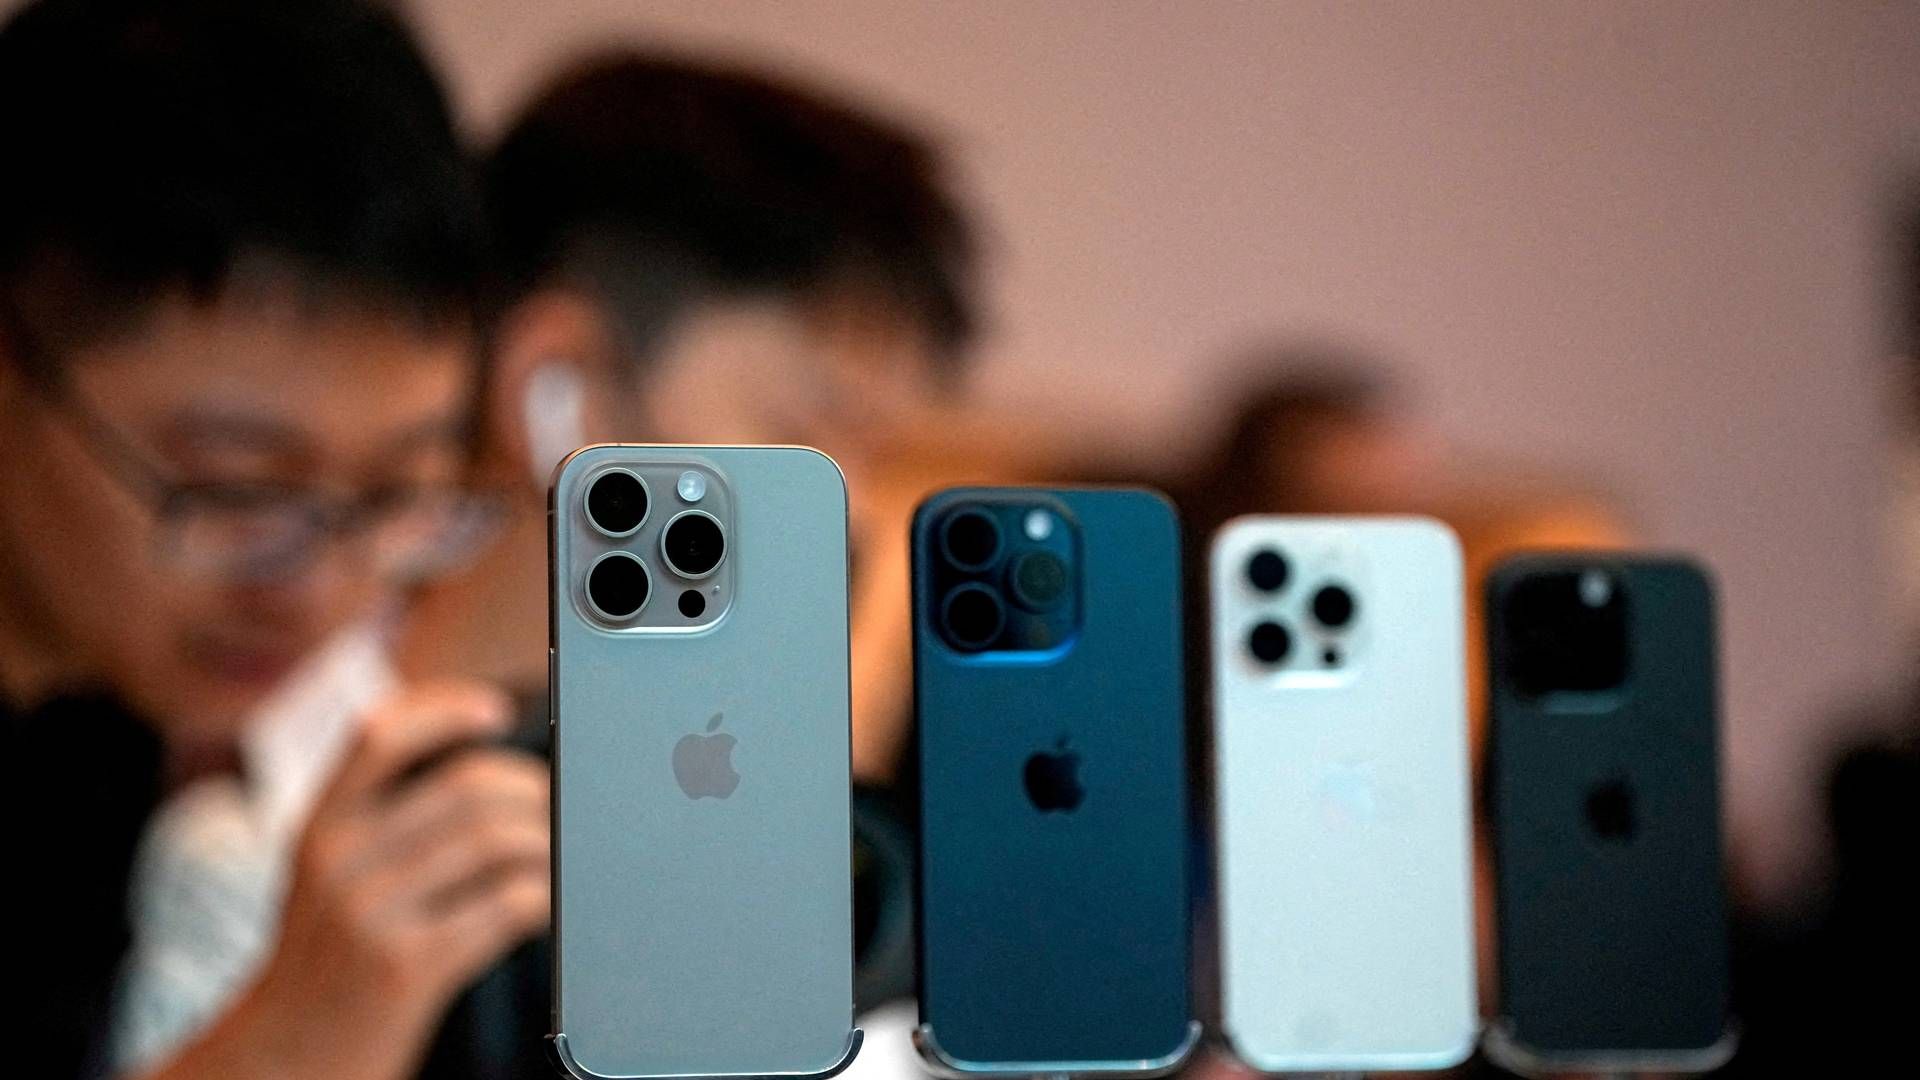 Apples Iphone er blandt de største aktører på det kinesiske marked, hvor det lokale mærke Huawei er en væsentlig konkurrent. | Foto: Aly Song